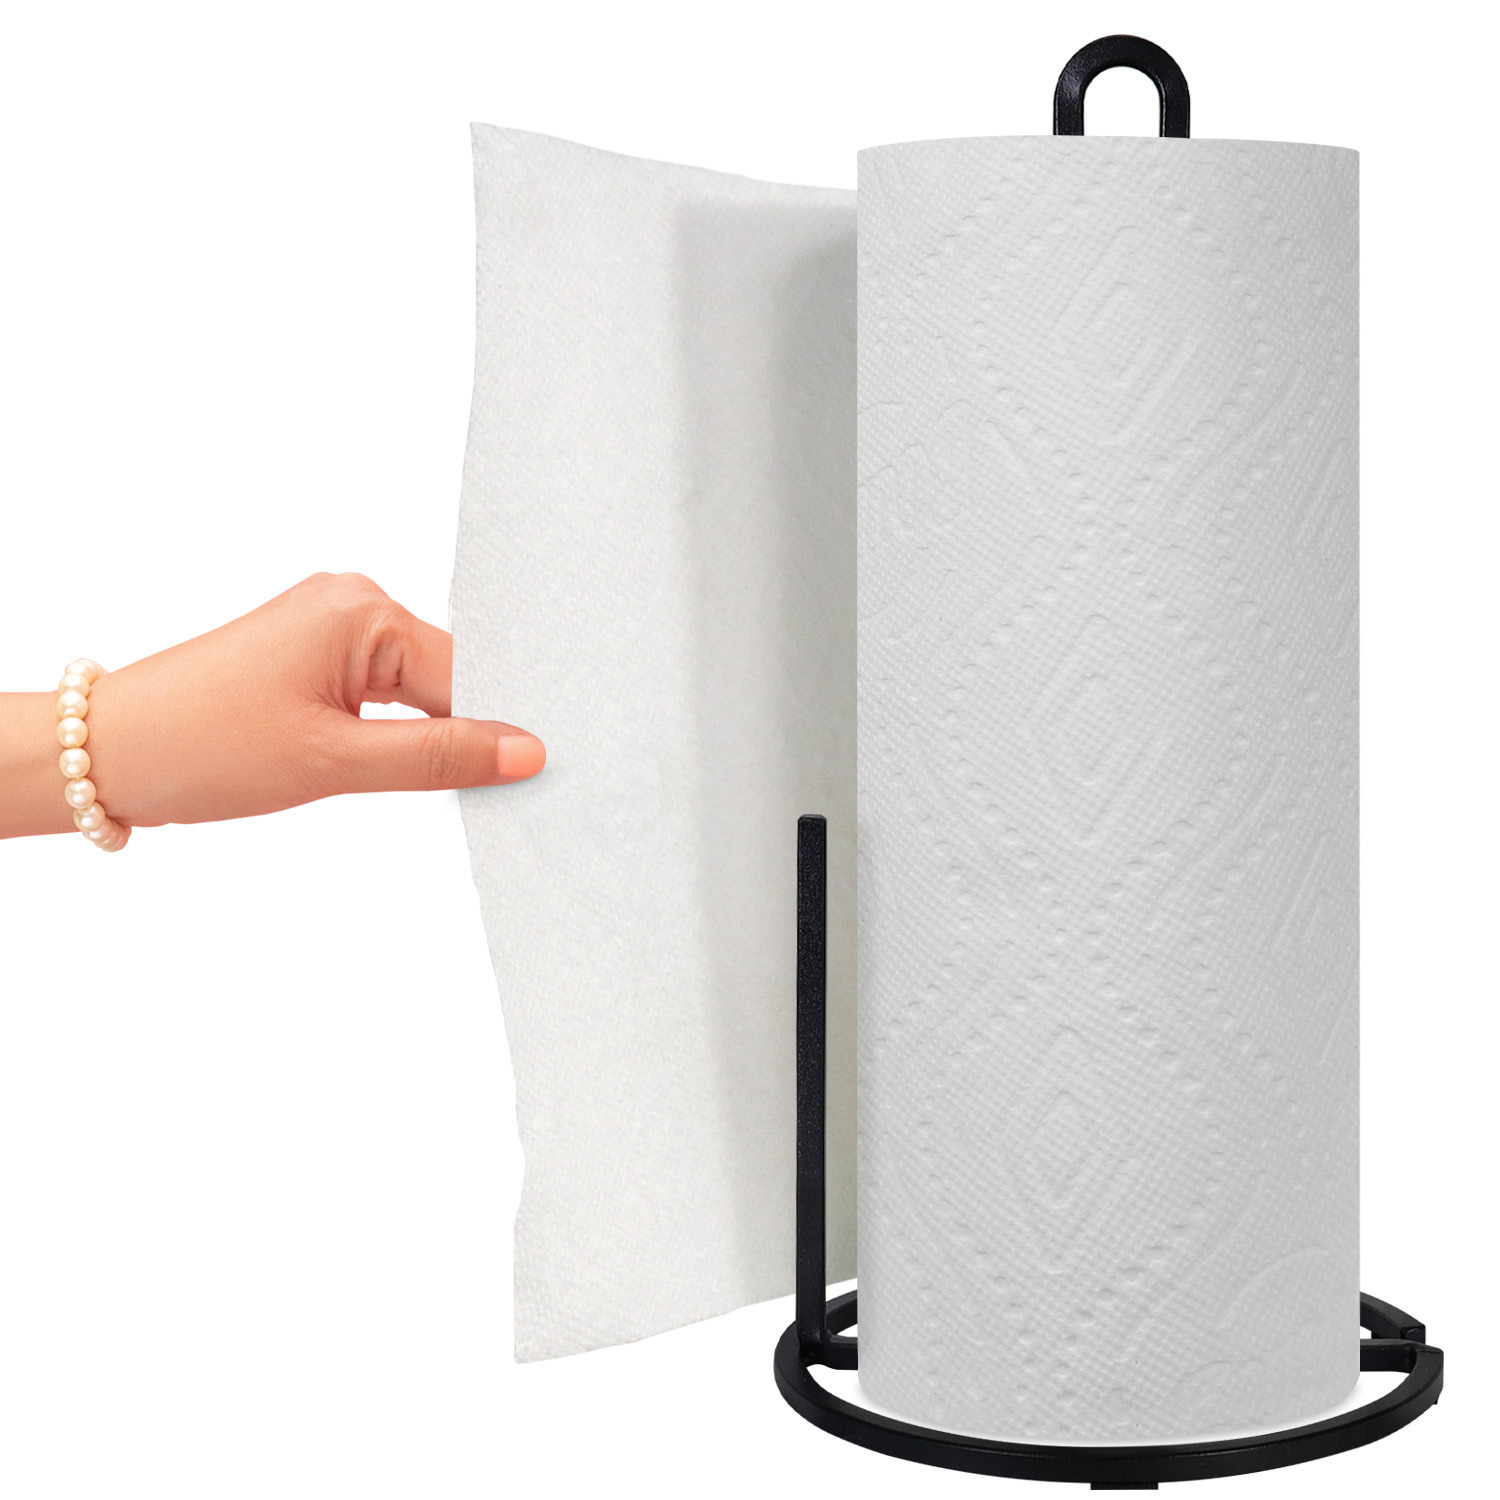 Black square modern paper towel holder 